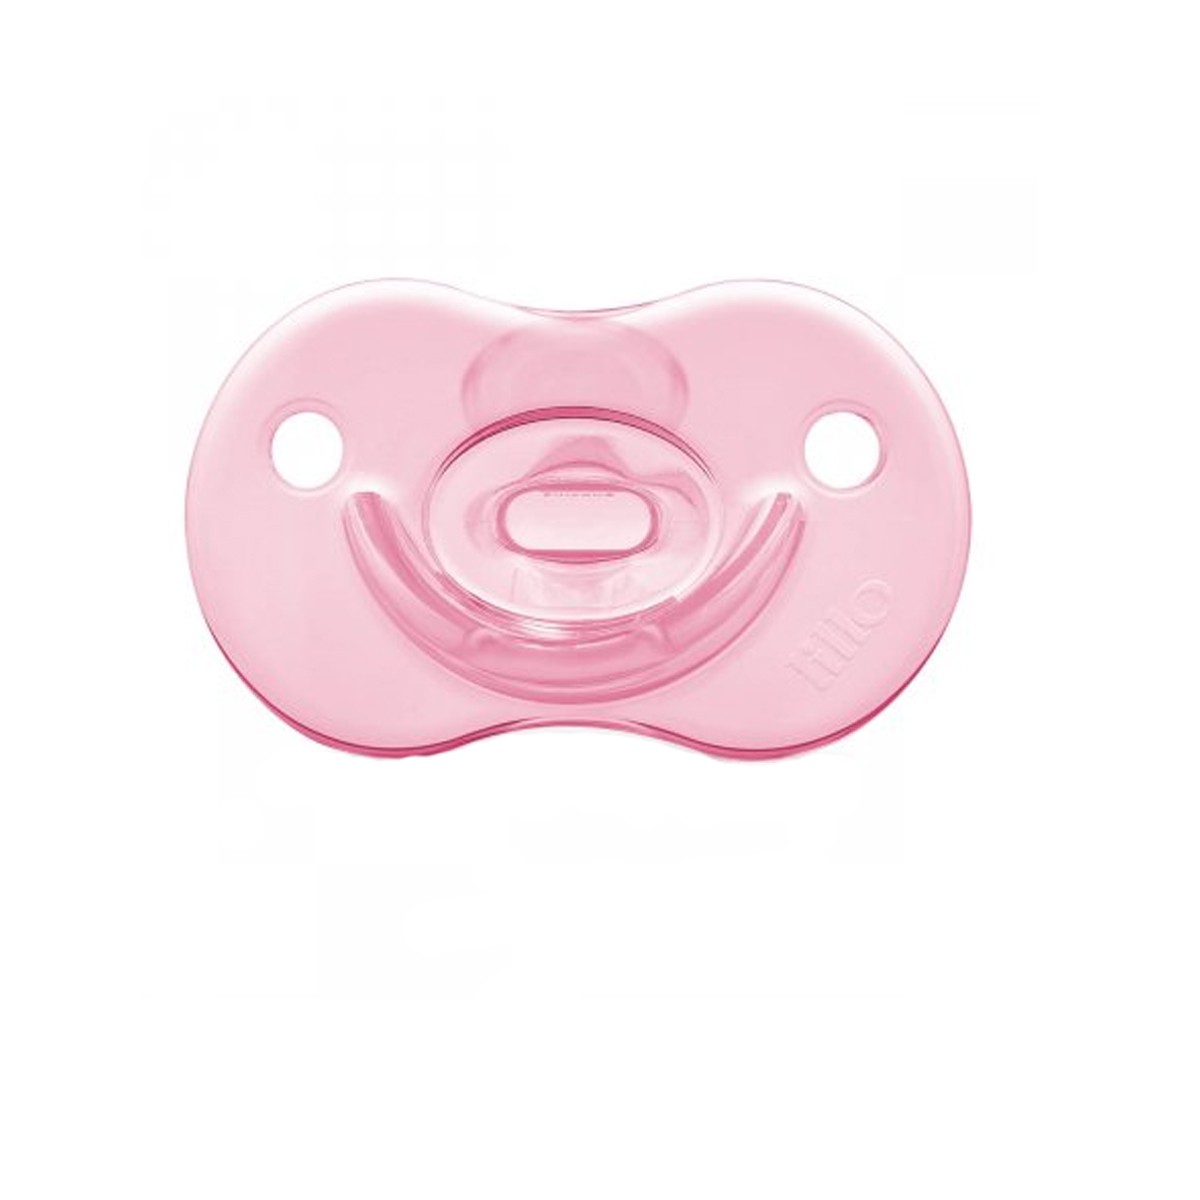 Chupeta Para Bebê Lillo Soft Calming Rosa A Partir dos 6 Meses 100% Silicone